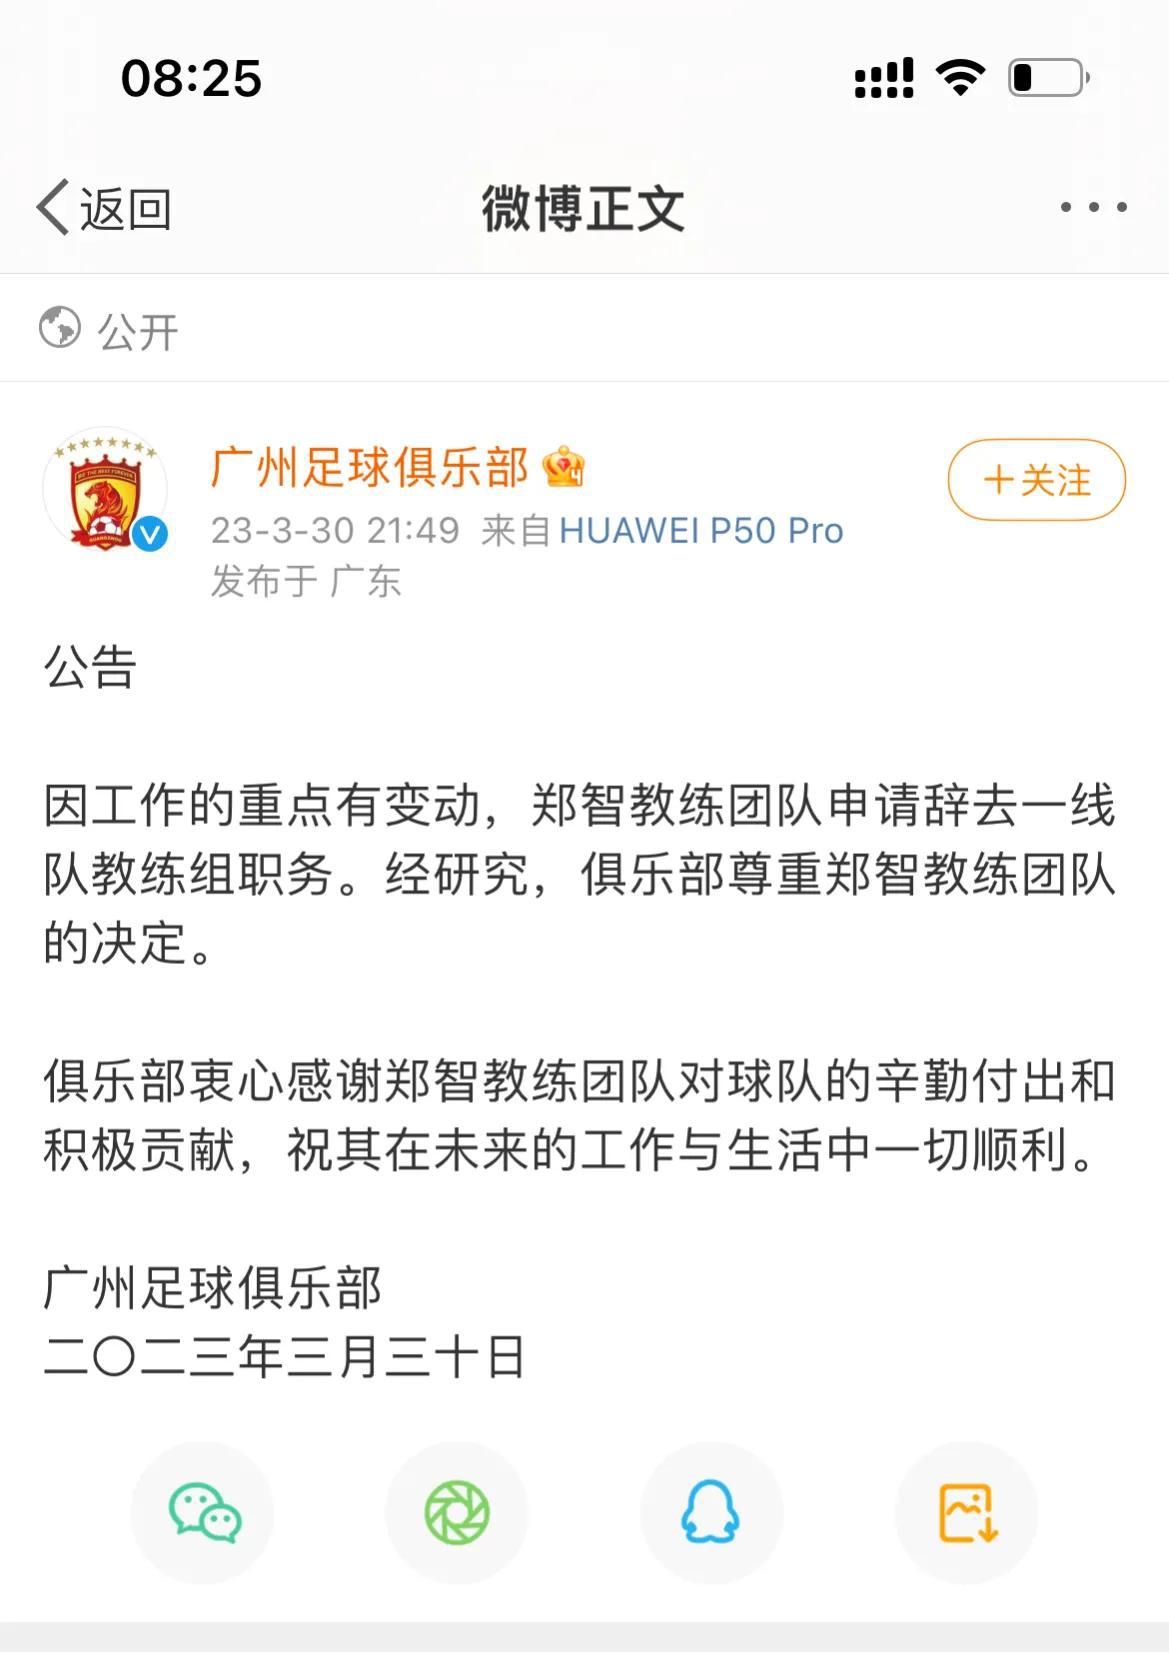 再见郑智！官宣离任广州足球俱乐部，未来去向曝光，球迷含泪送祝福。

随着广州足球(1)